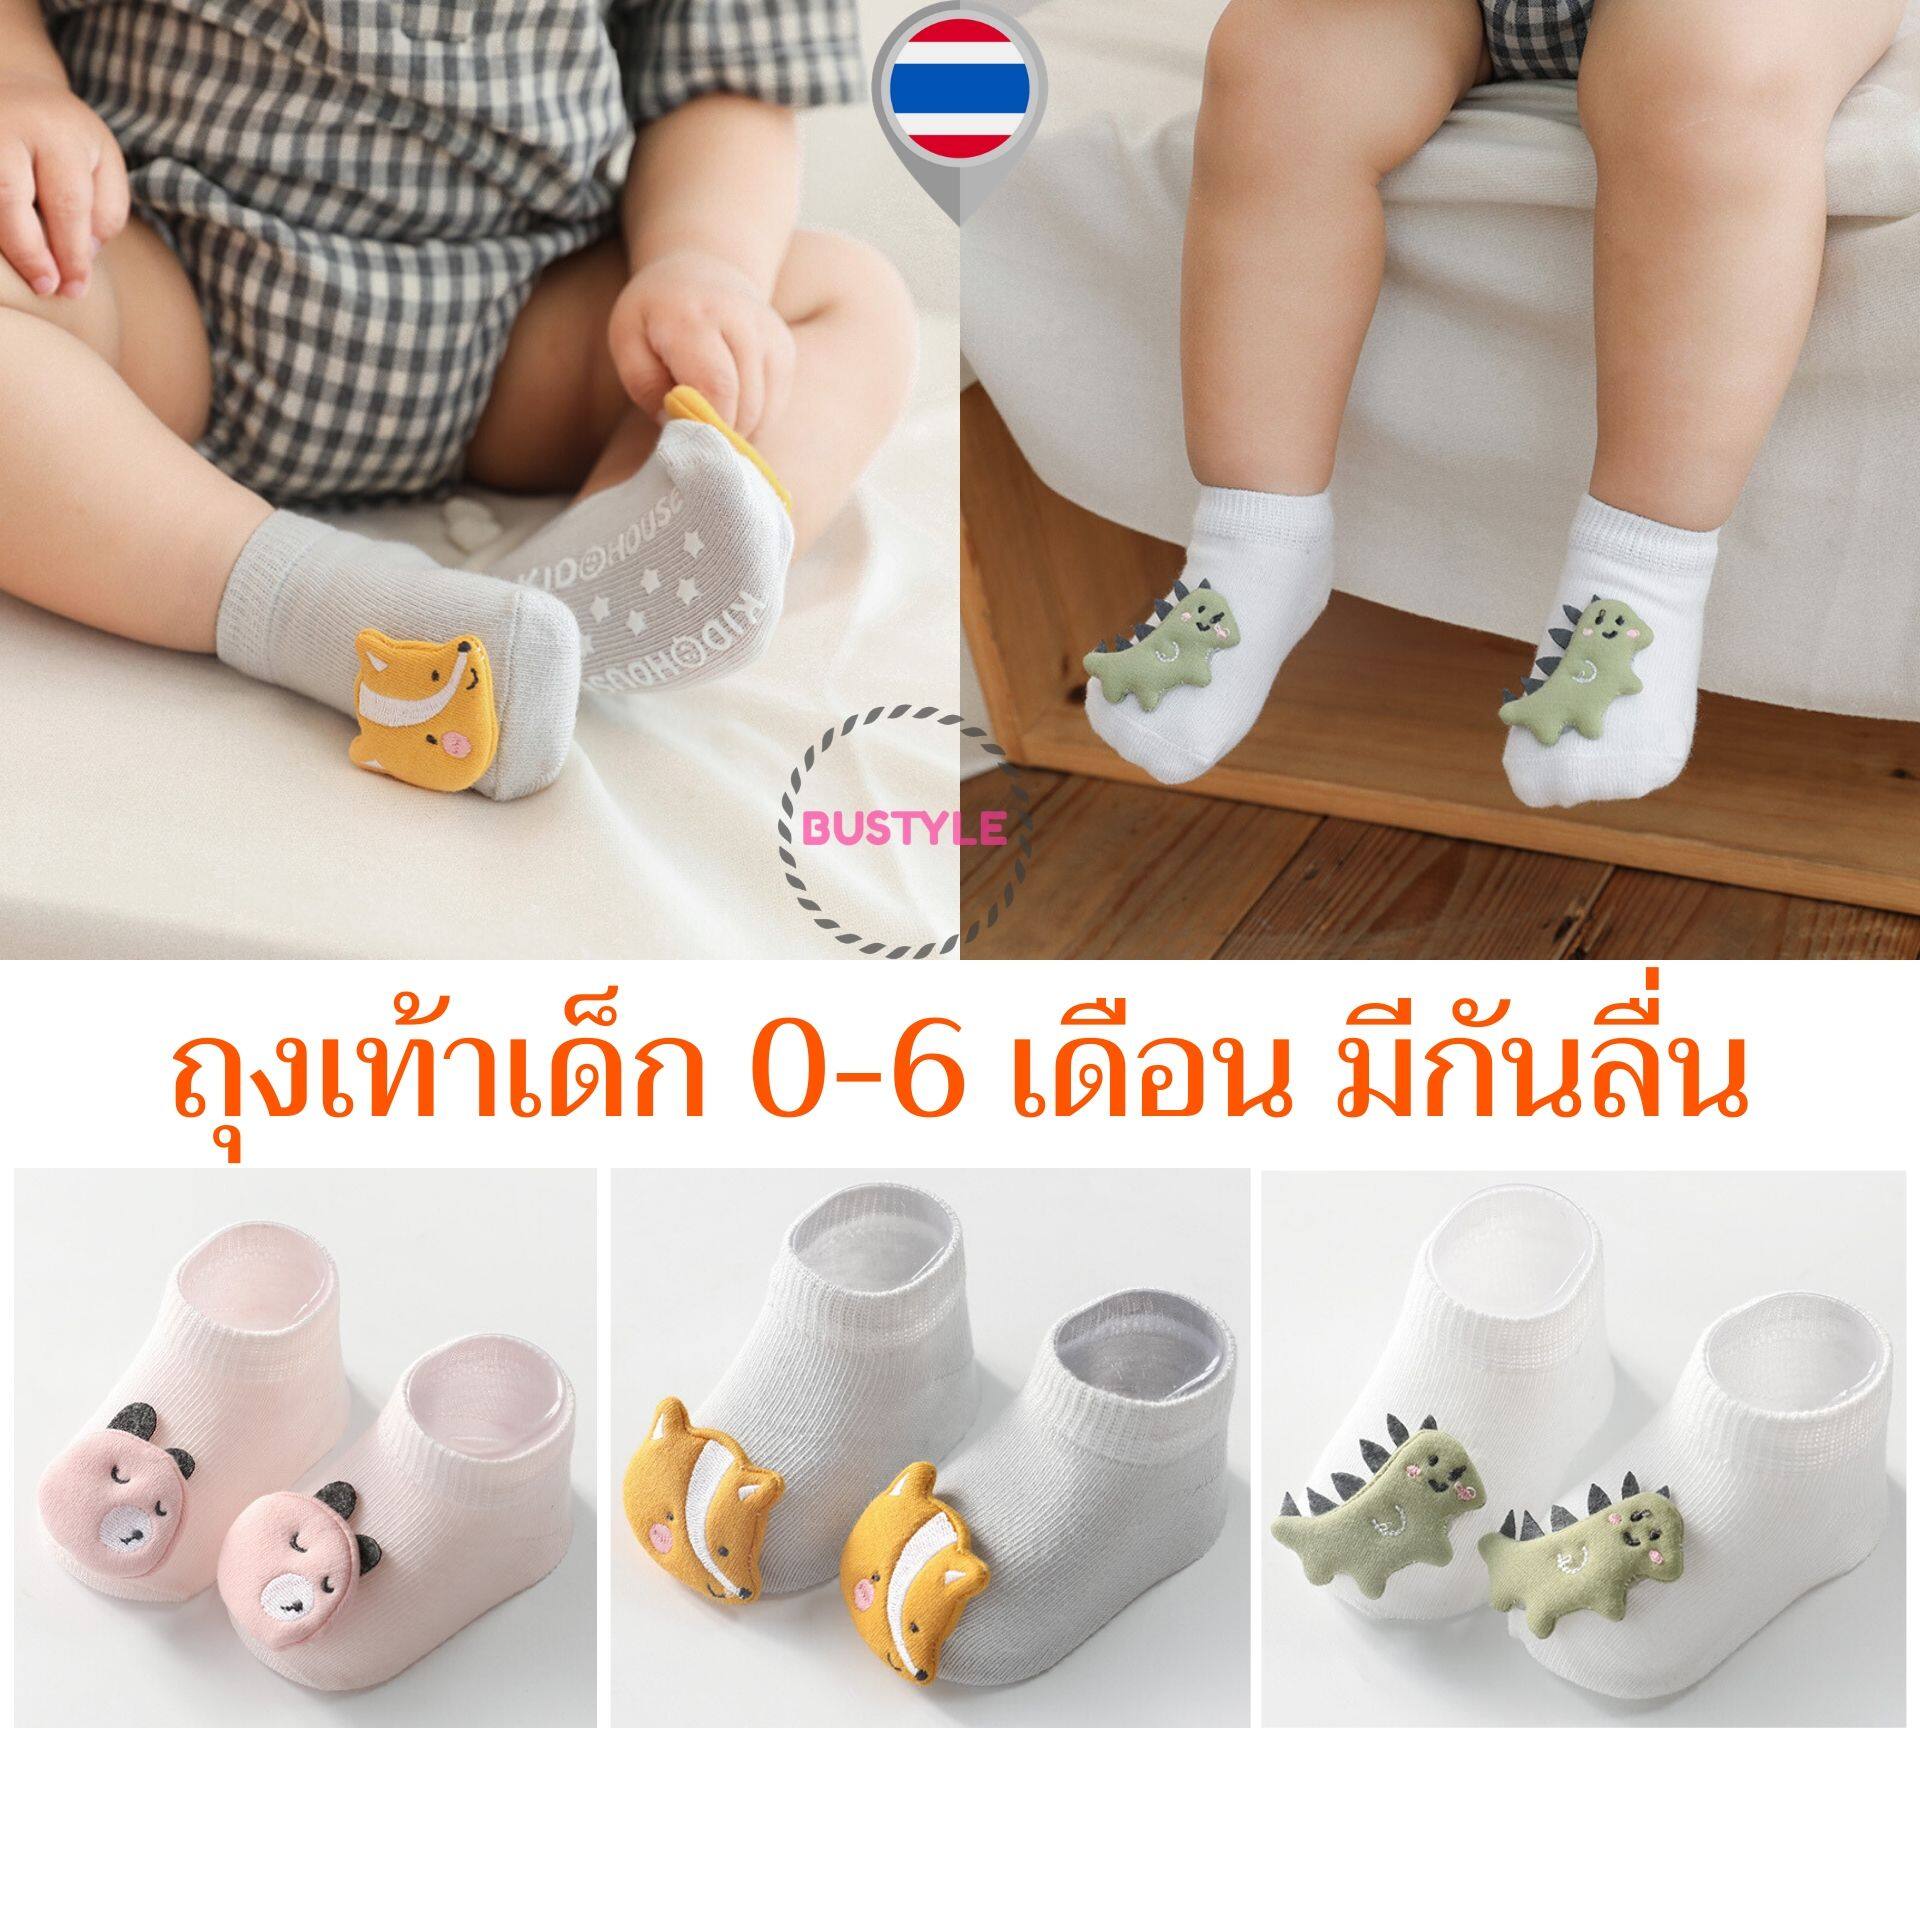 ⚡ถุงเท้าเด็ก ถุงเท้าเด็กแรกเกิด 0-6 เดือน มีกันลื่น ผ้าดี ลายน่ารัก ของใช้เด็กอ่อน เตรียมคลอด ชุดเด็กอ่อน เสื้อผ้าเด็กอ่อน newborn baby AS004